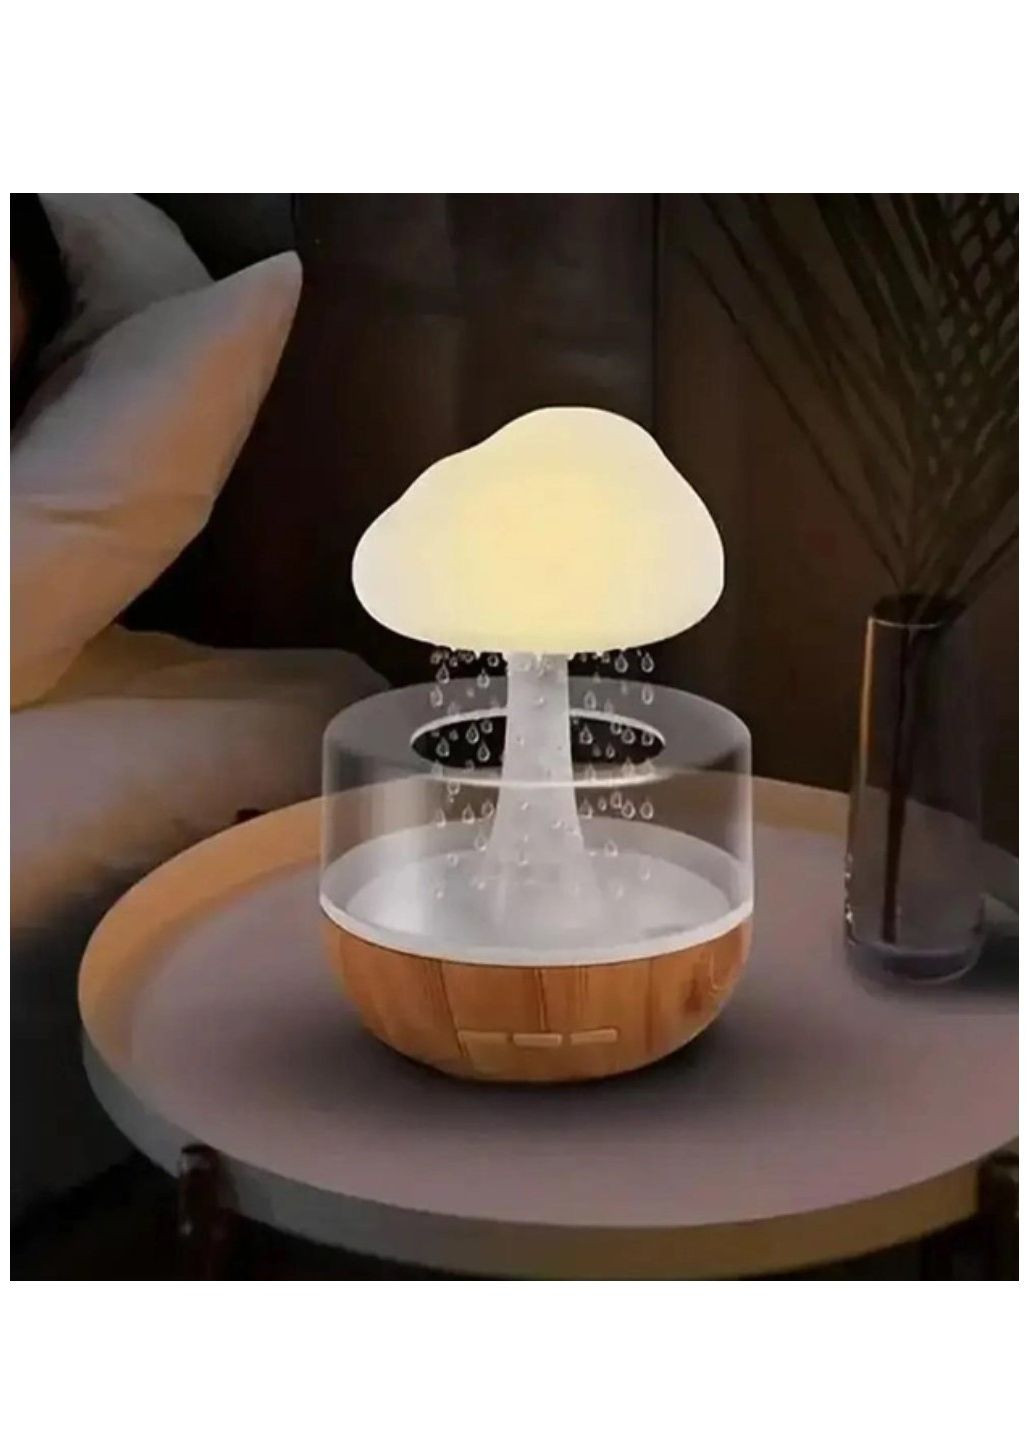 Зволожувач повітря нічник з ефектом дощу з підсвічуванням RGB у вигляді гриба Aroma (292144549)